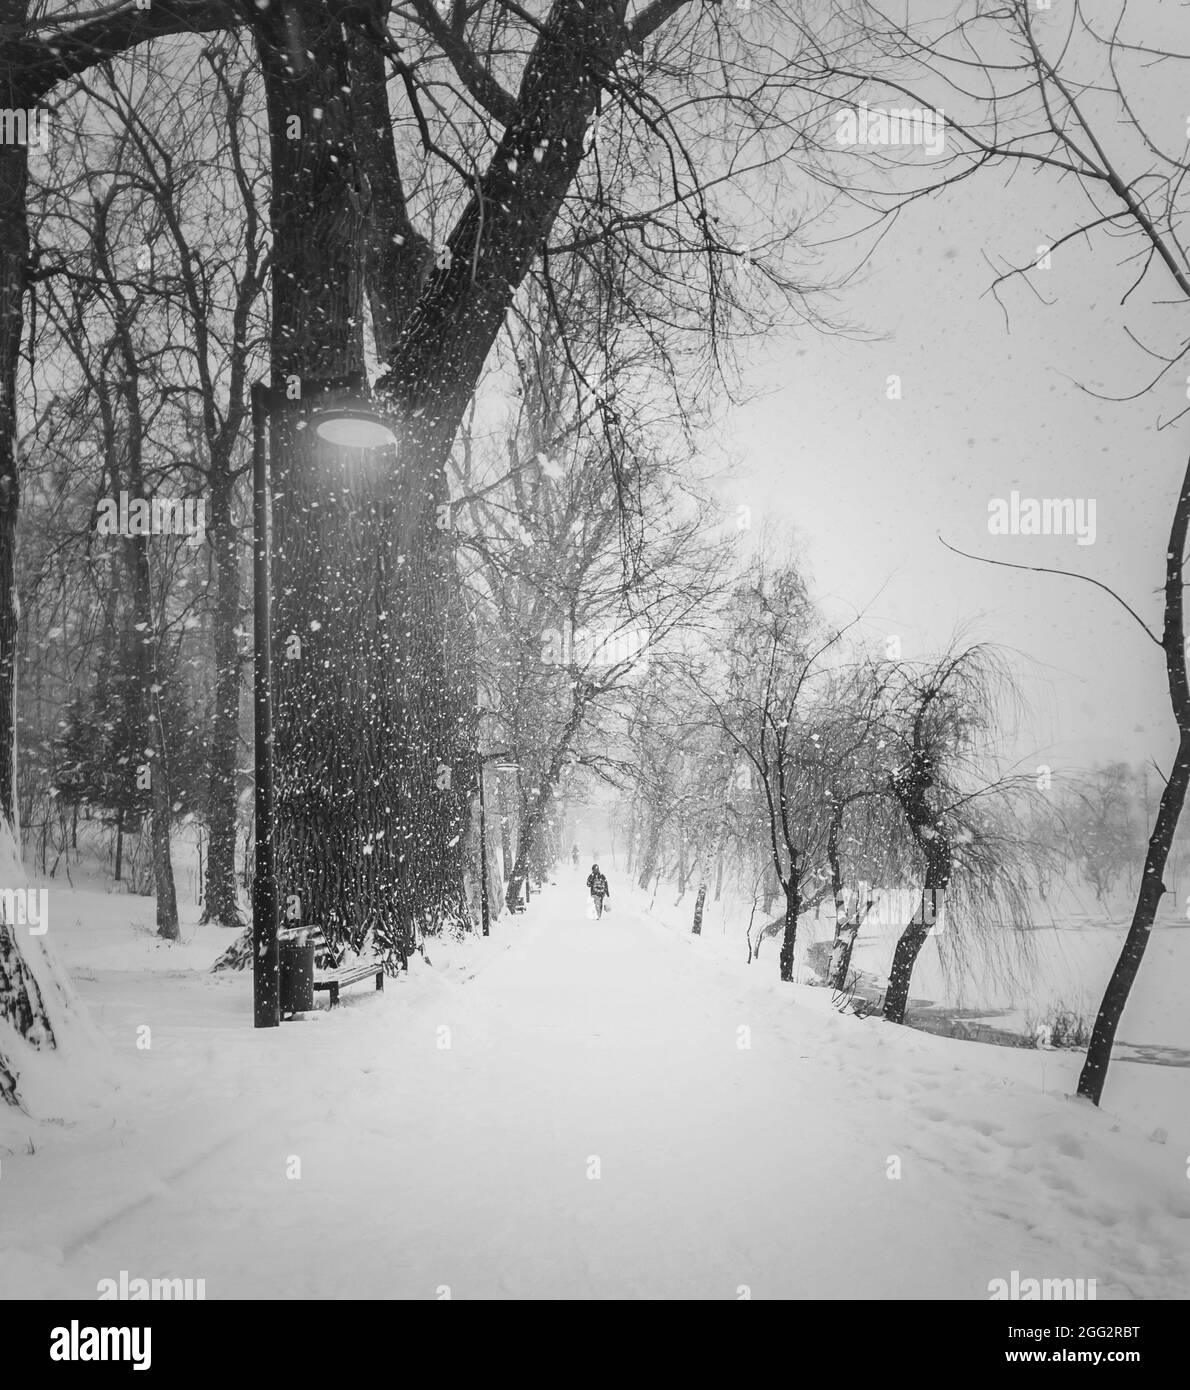 Scène hivernale noire et blanche avec une personne seule marchant dans un blizzard le long d'une allée d'arbres dans le parc enneigé. Silhouette de Wanderer sur un chemin dans un silen Banque D'Images